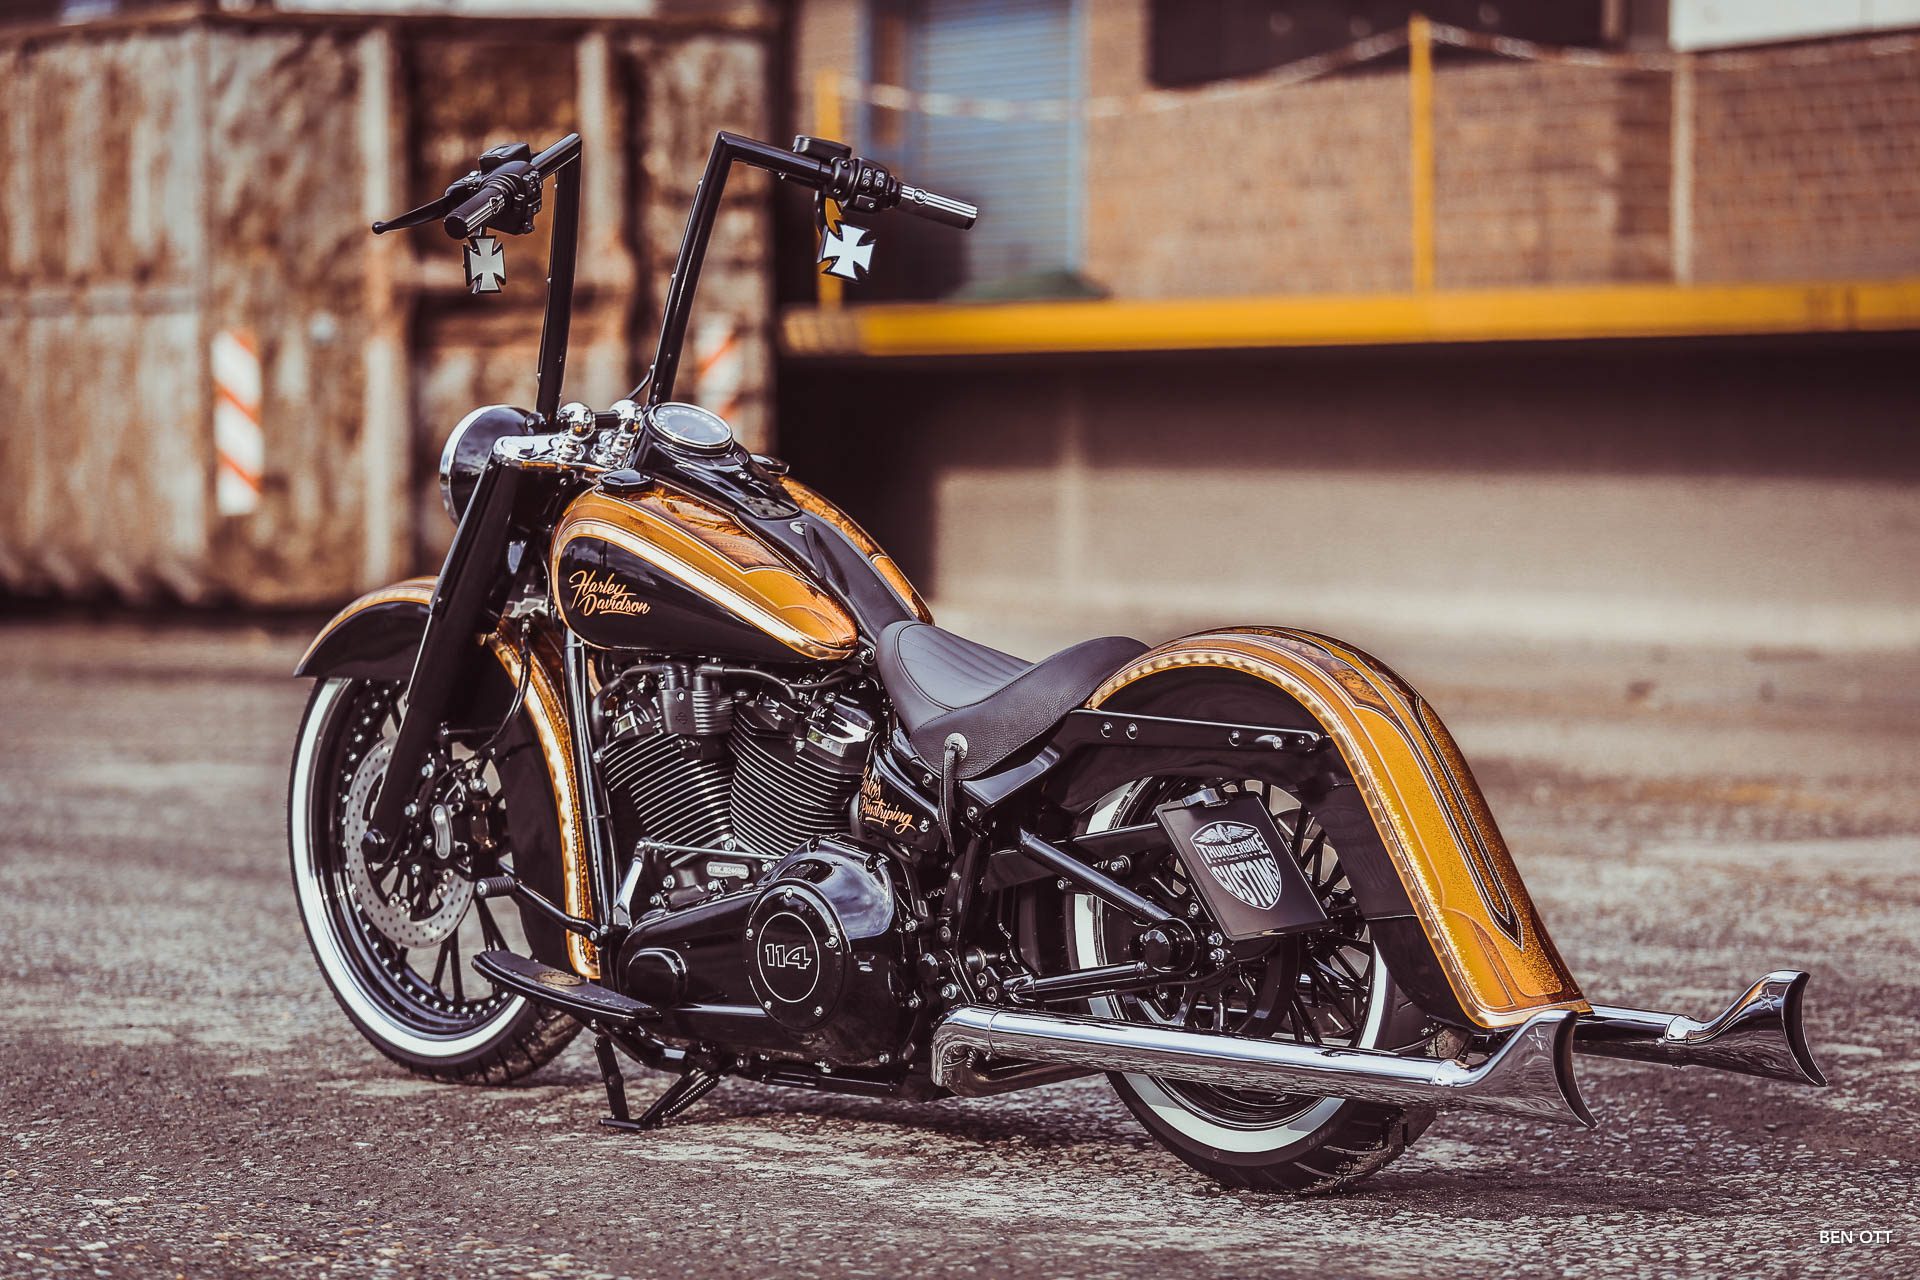 La Candela customized Thunderbike Harley-Davidson Heritage by Ben Ott